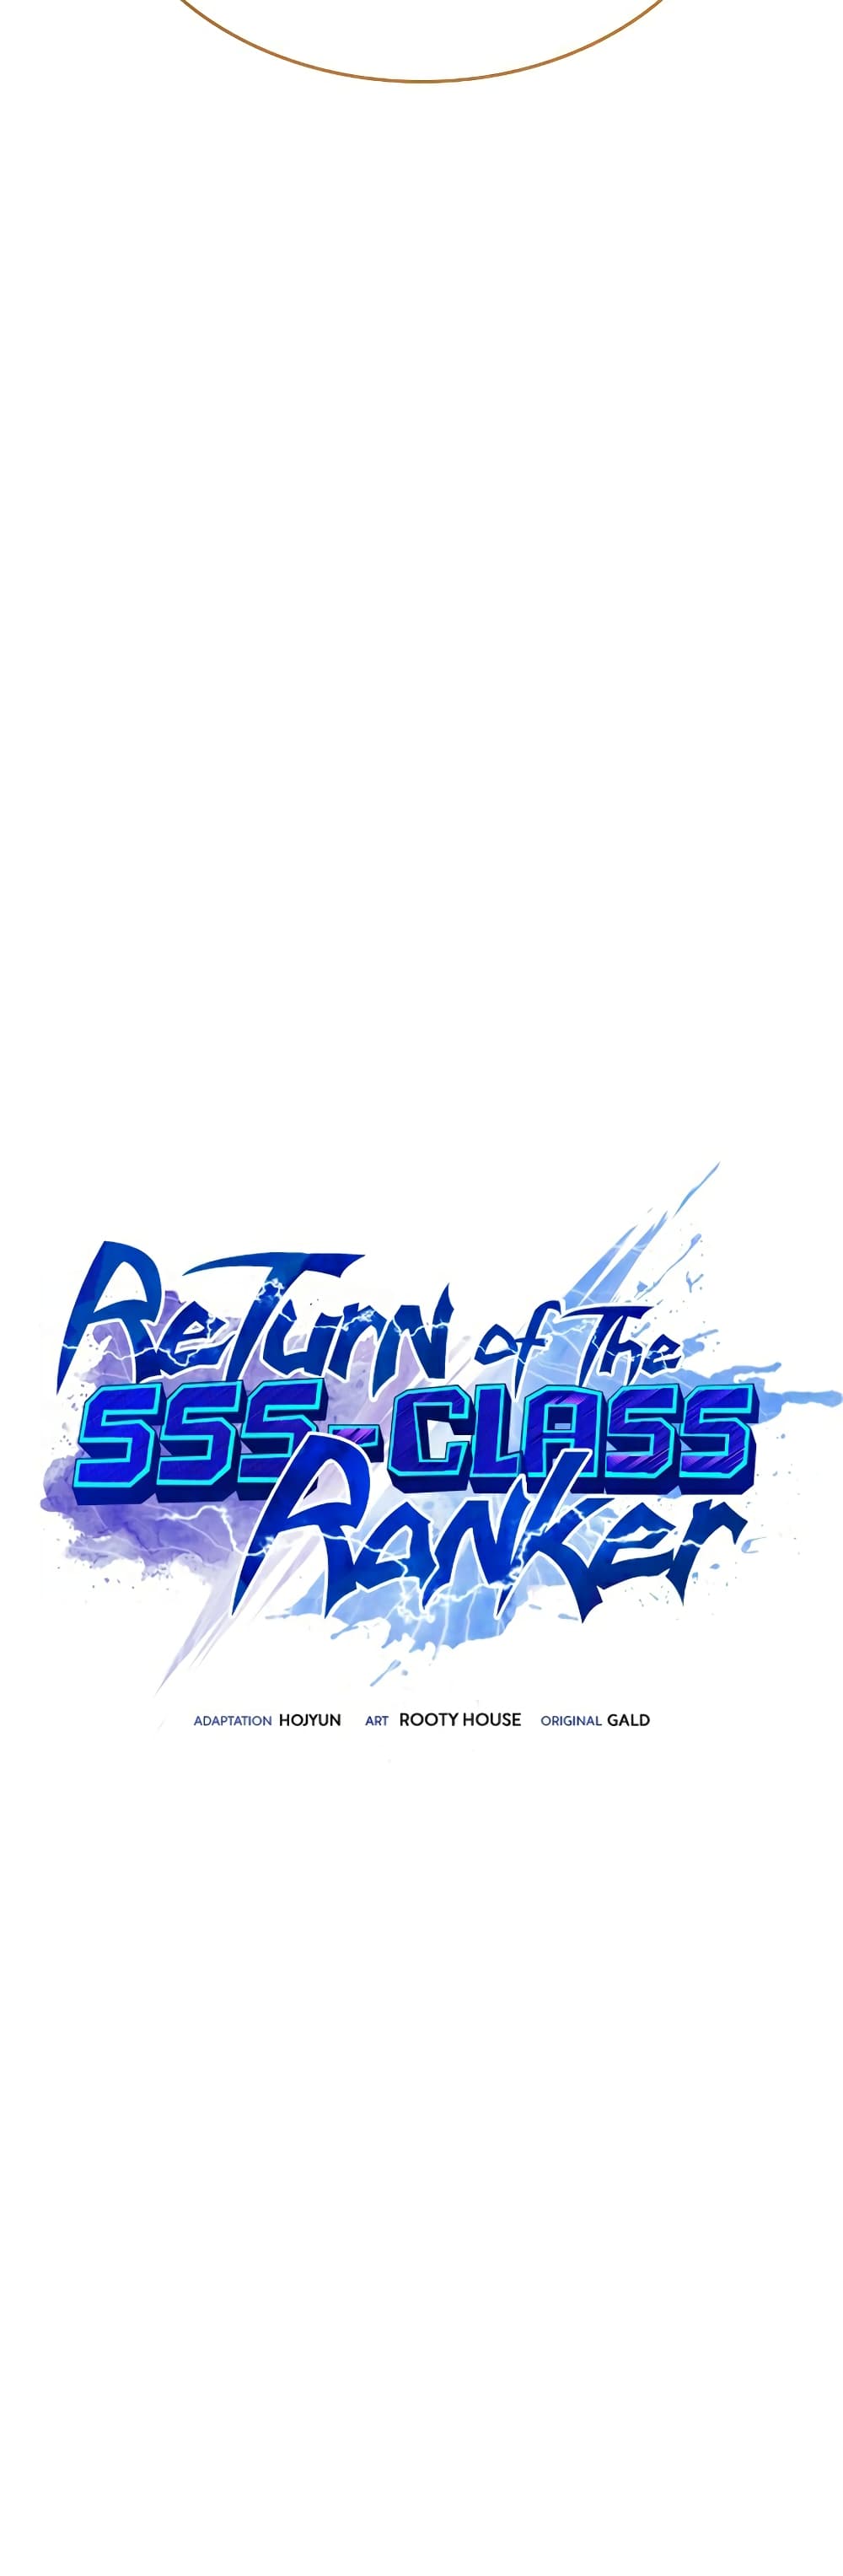 Return of the SSS Class Ranker 41 (27)